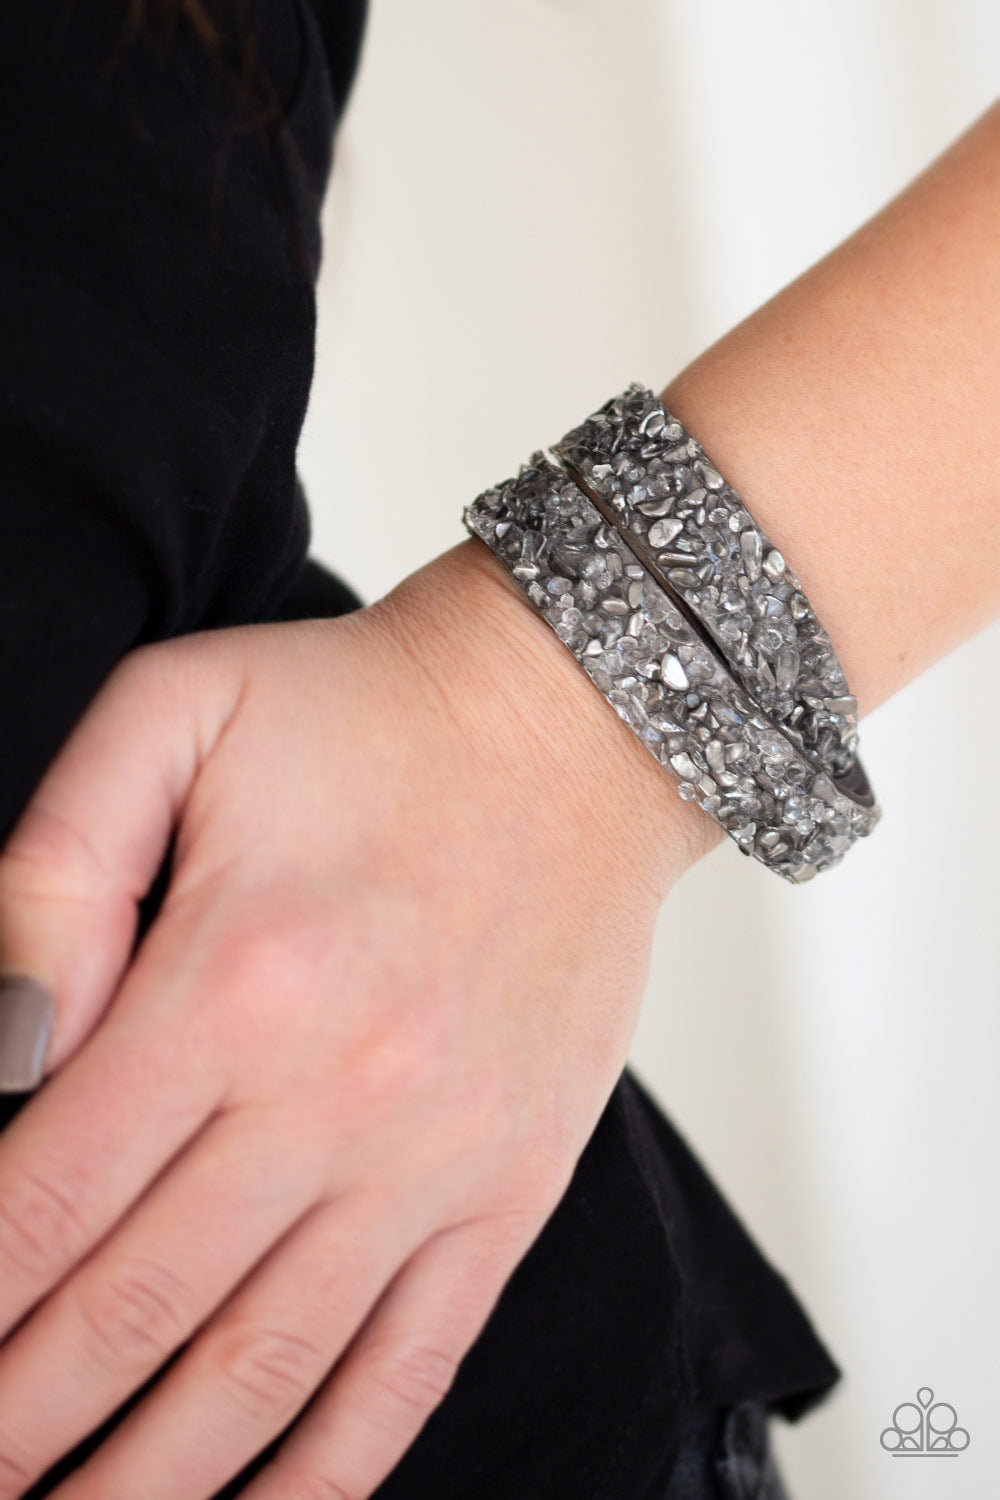 Paparazzi CRUSH Hour - Silver - Rhinestone - Suede Double Wrap Bracelet - $5 Jewelry with Ashley Swint